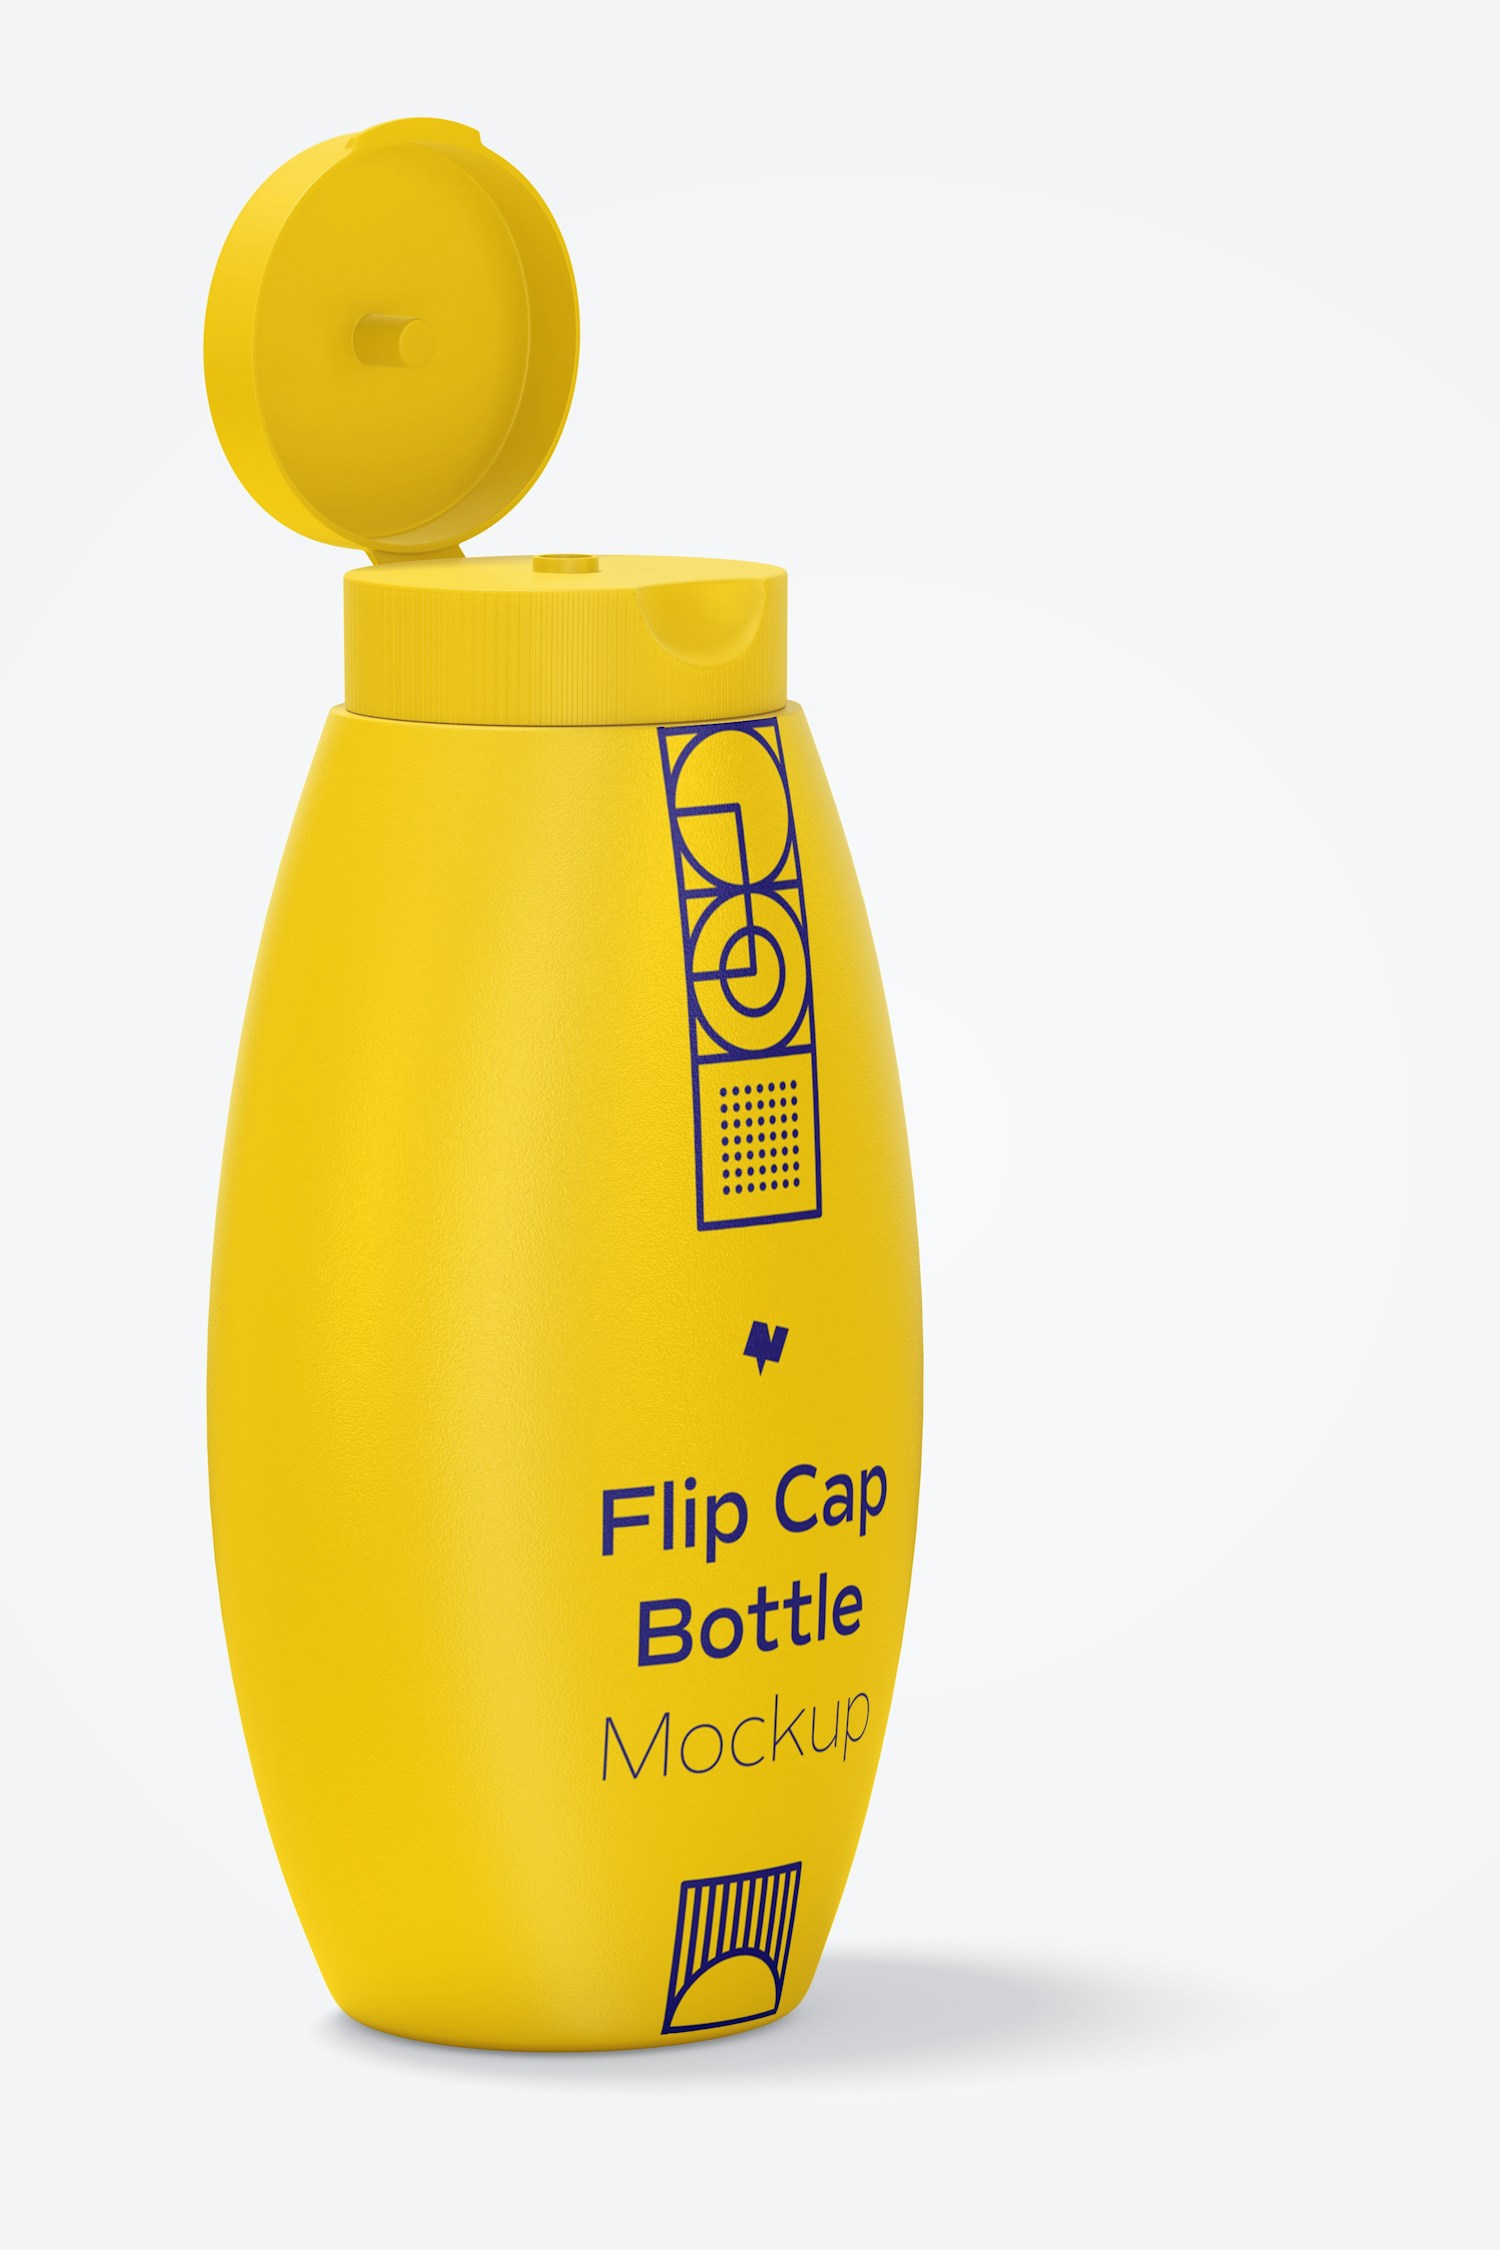 Flip Cap Bottle Mockup, Opened